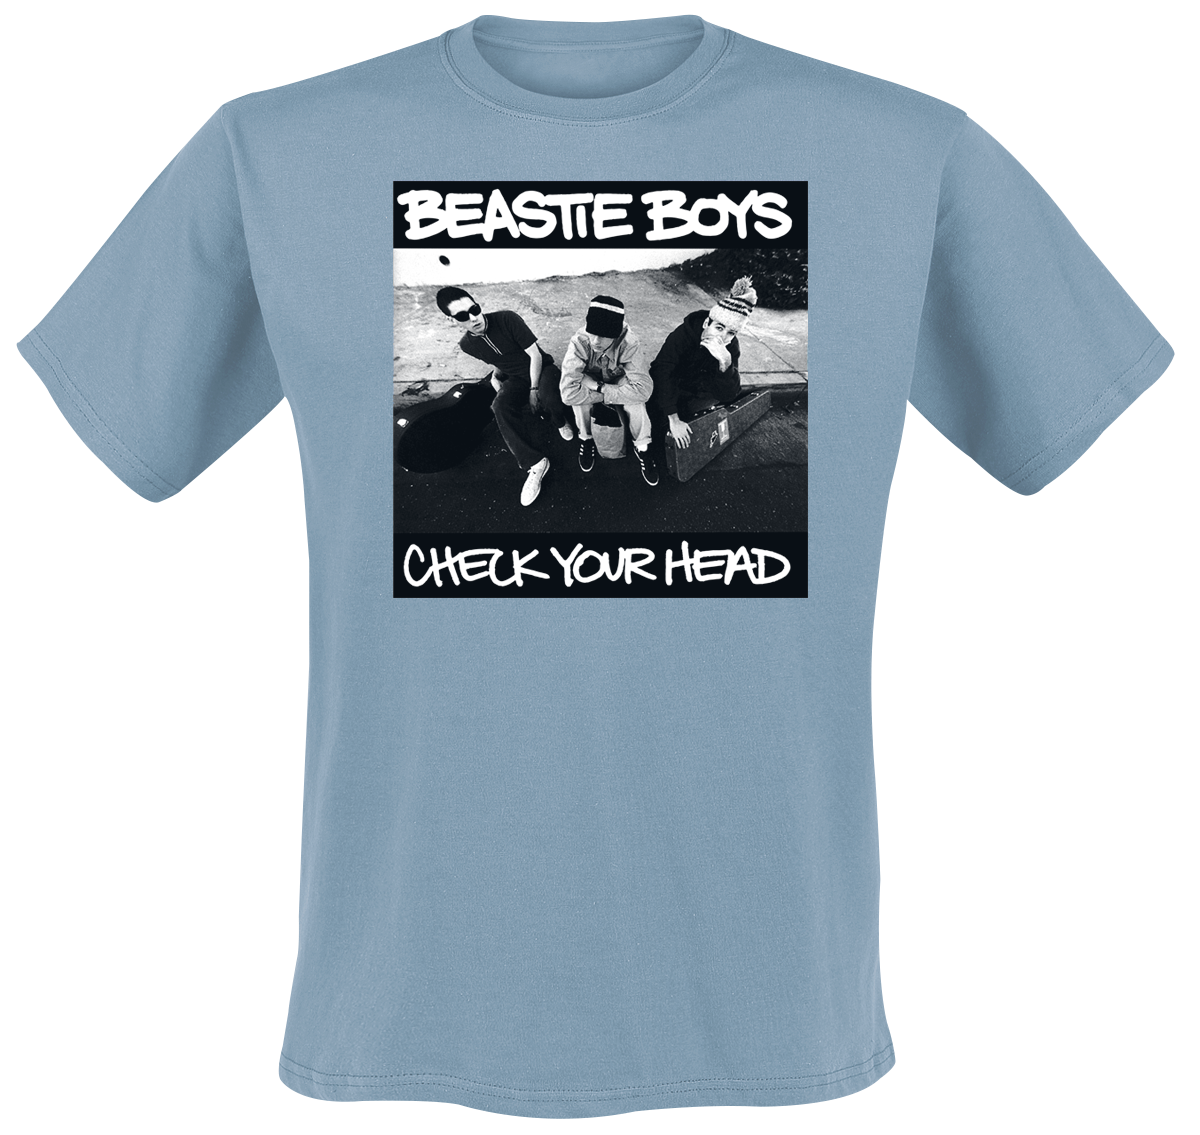 Beastie Boys - Check Your Head - T-Shirt - blaugrau